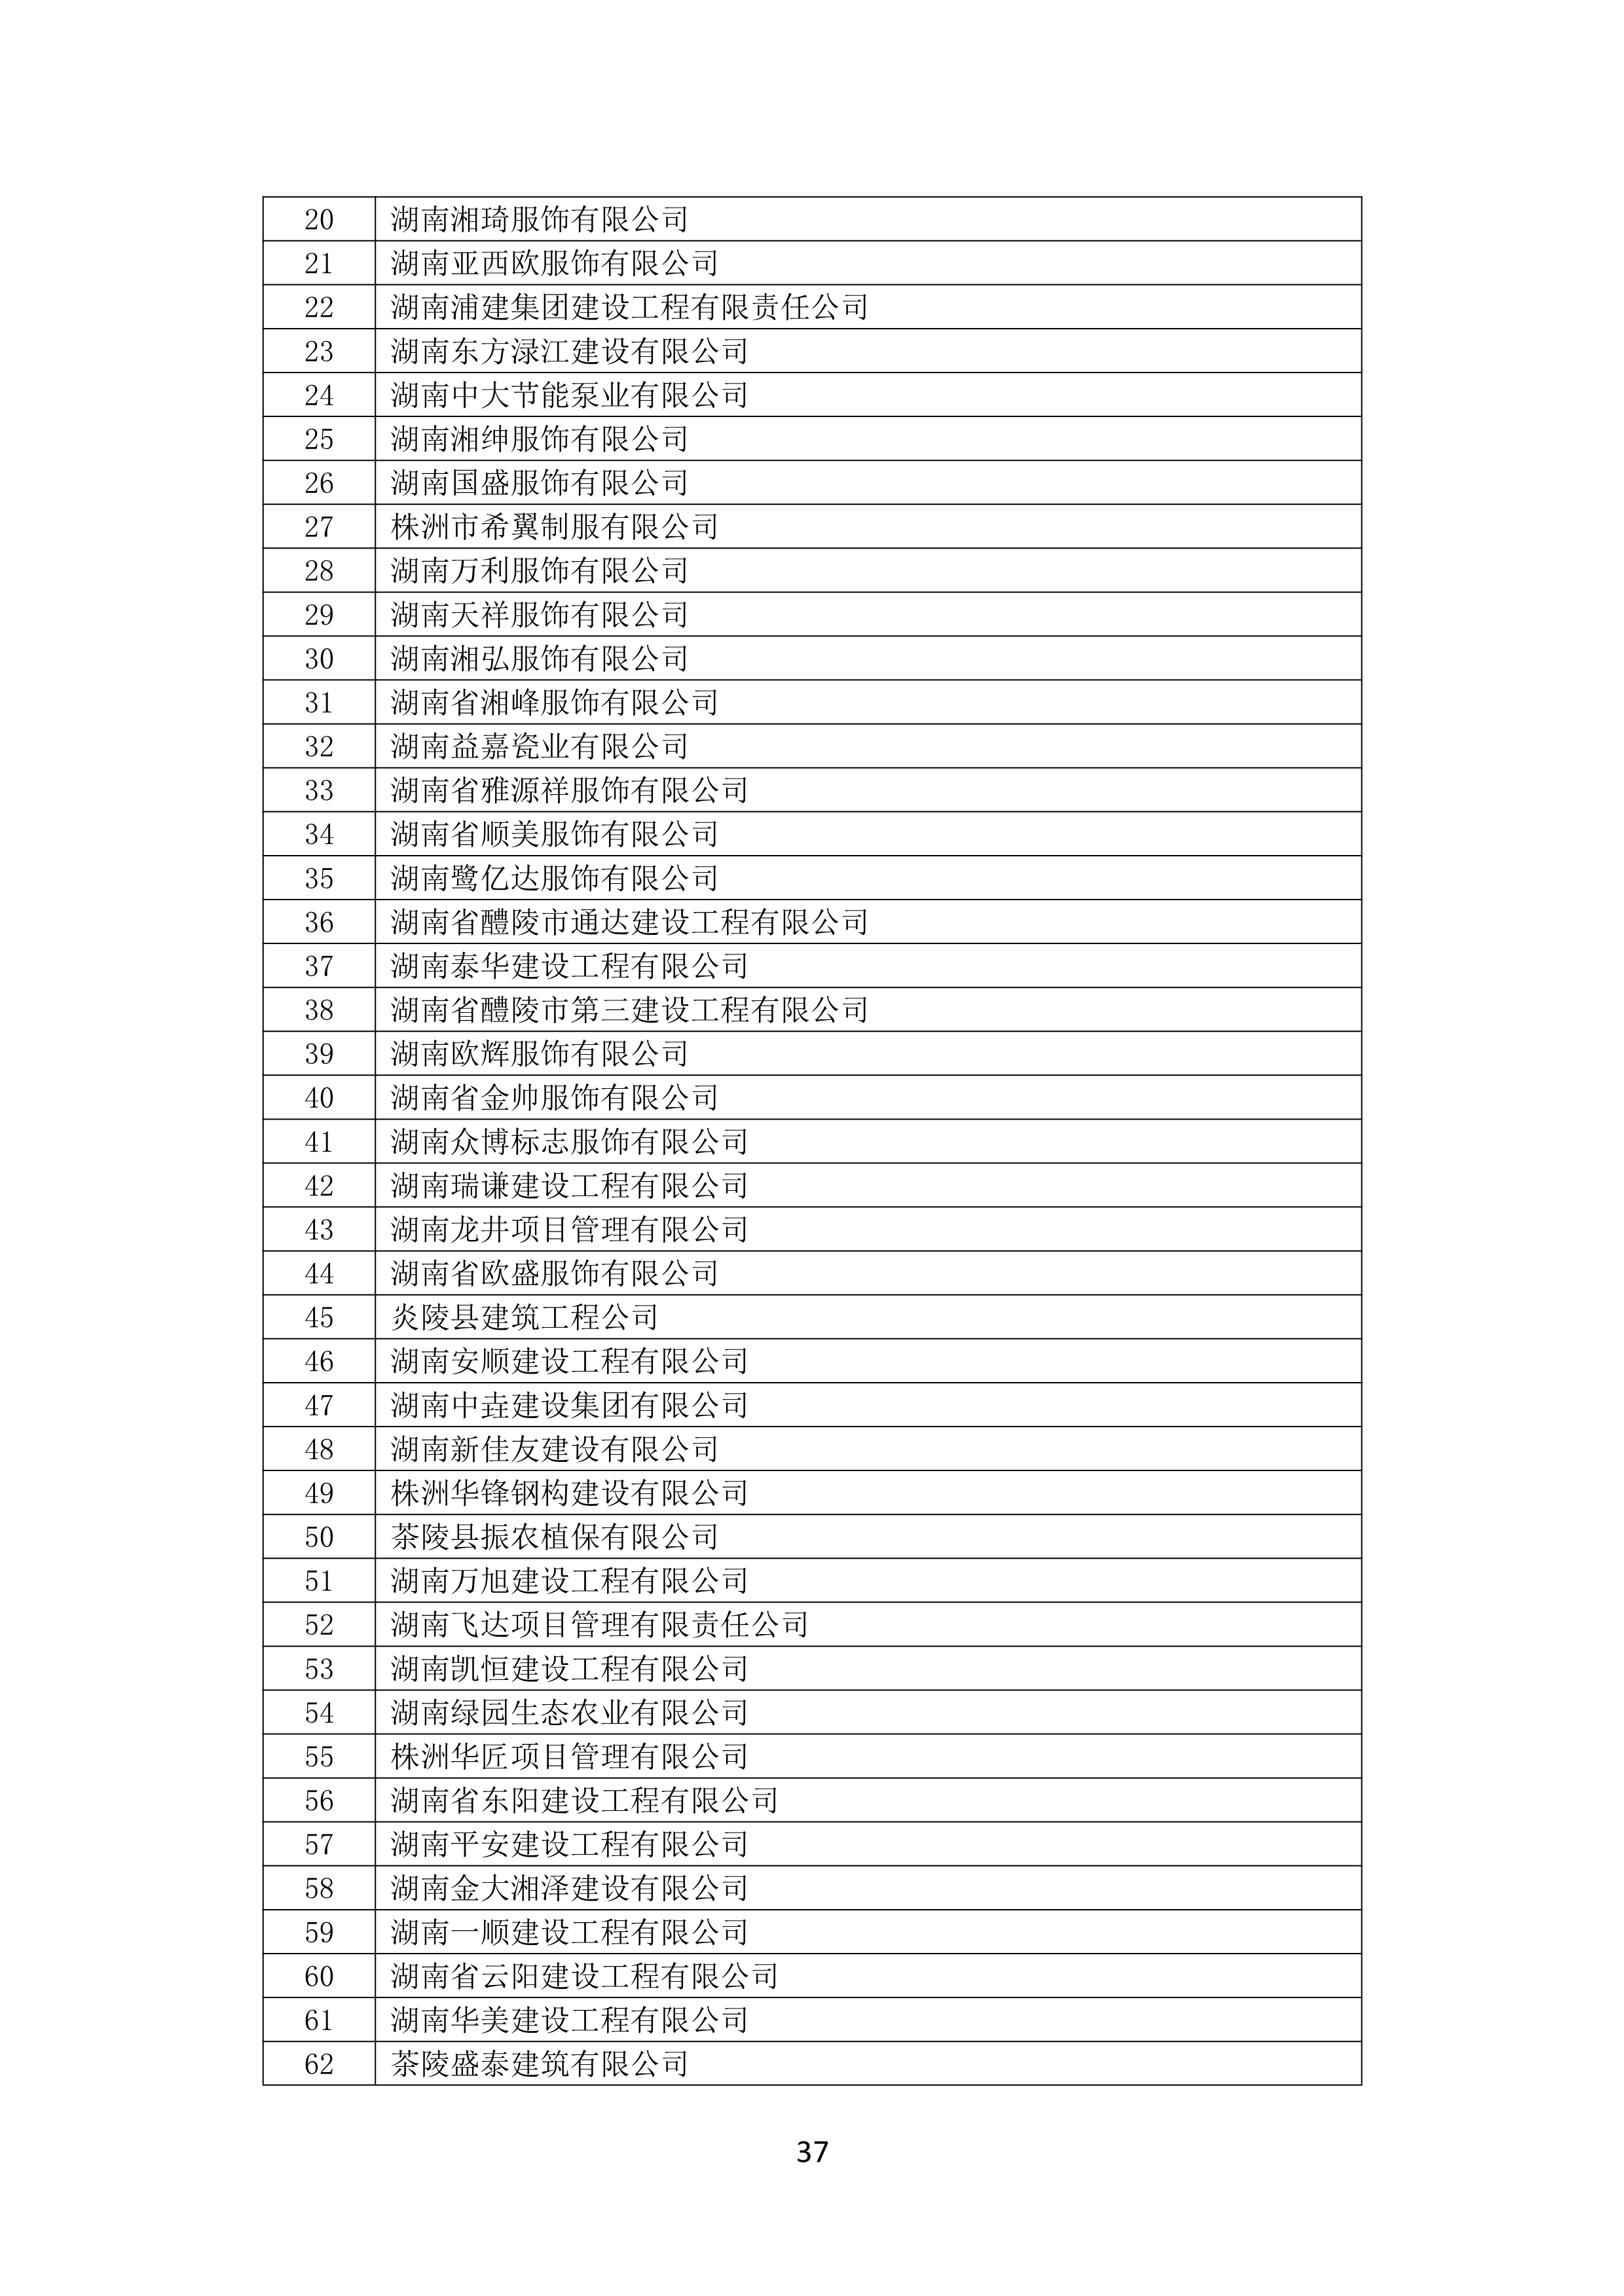 2021 年(nián)度湖南省守合同重信用企業名單_38.png